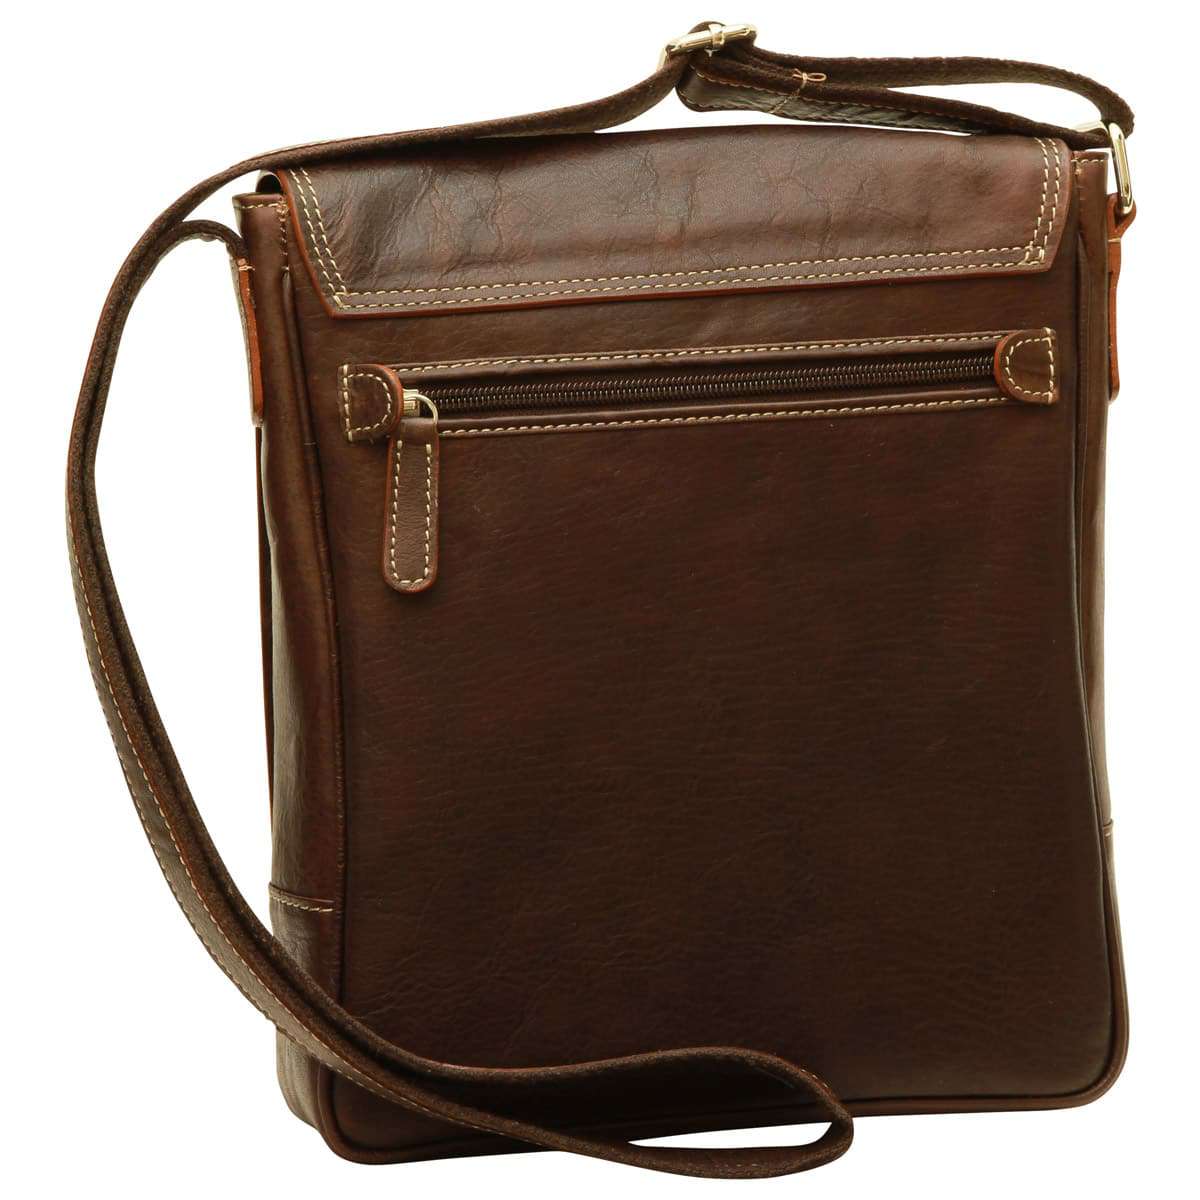 Leather I-Pad bag - Dark Brown | 087361TM US | Old Angler Firenze